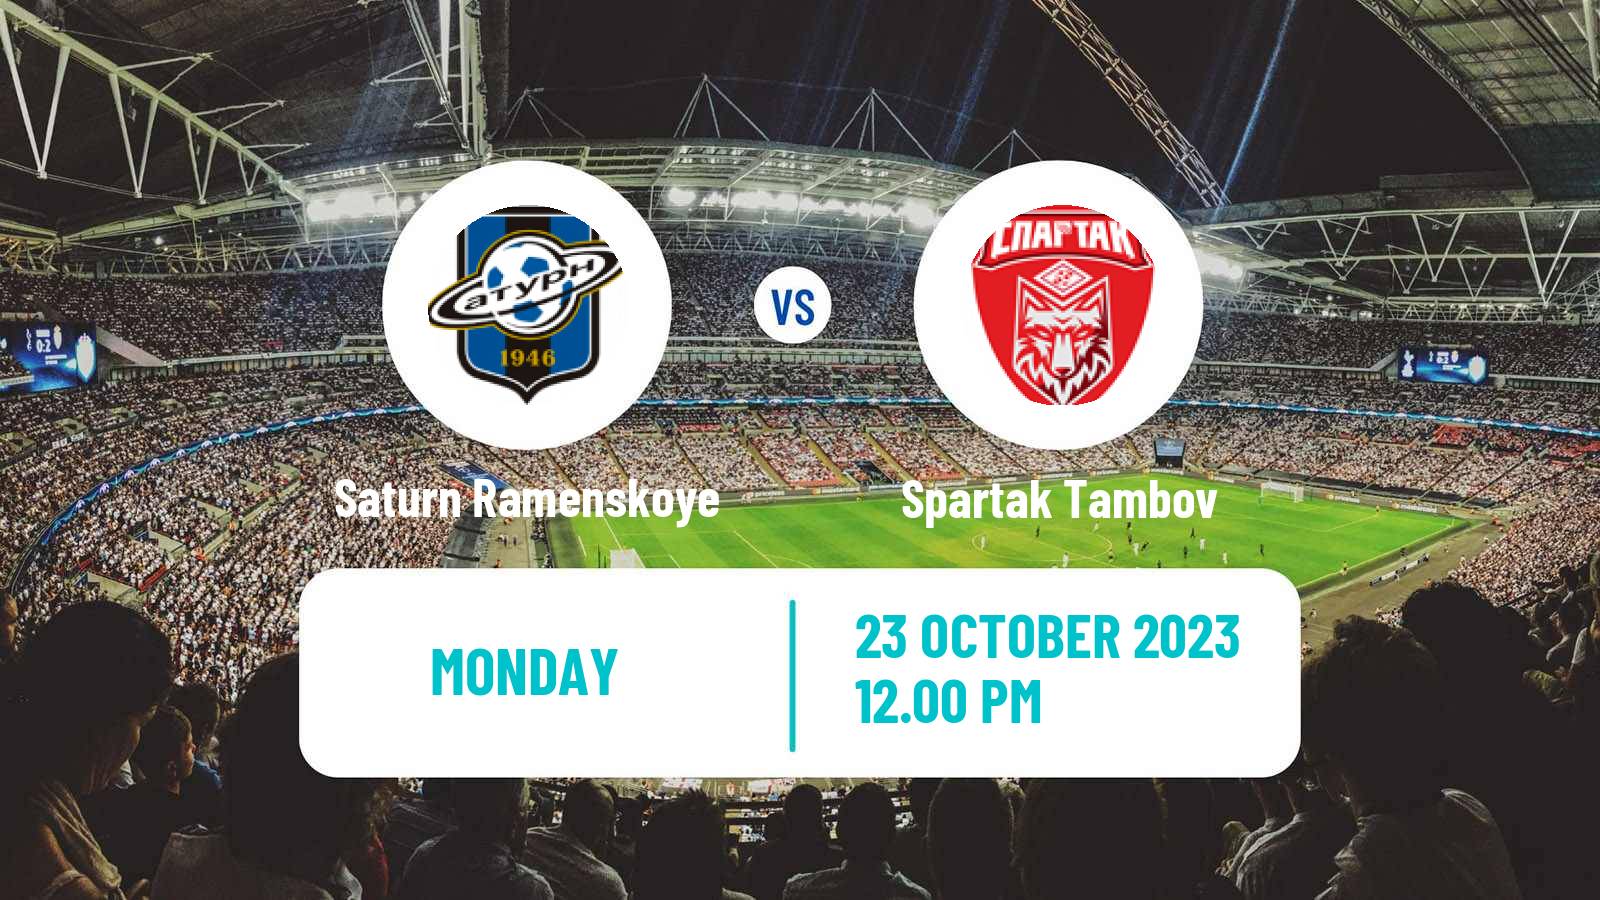 Soccer FNL 2 Division B Group 3 Saturn Ramenskoye - Spartak Tambov